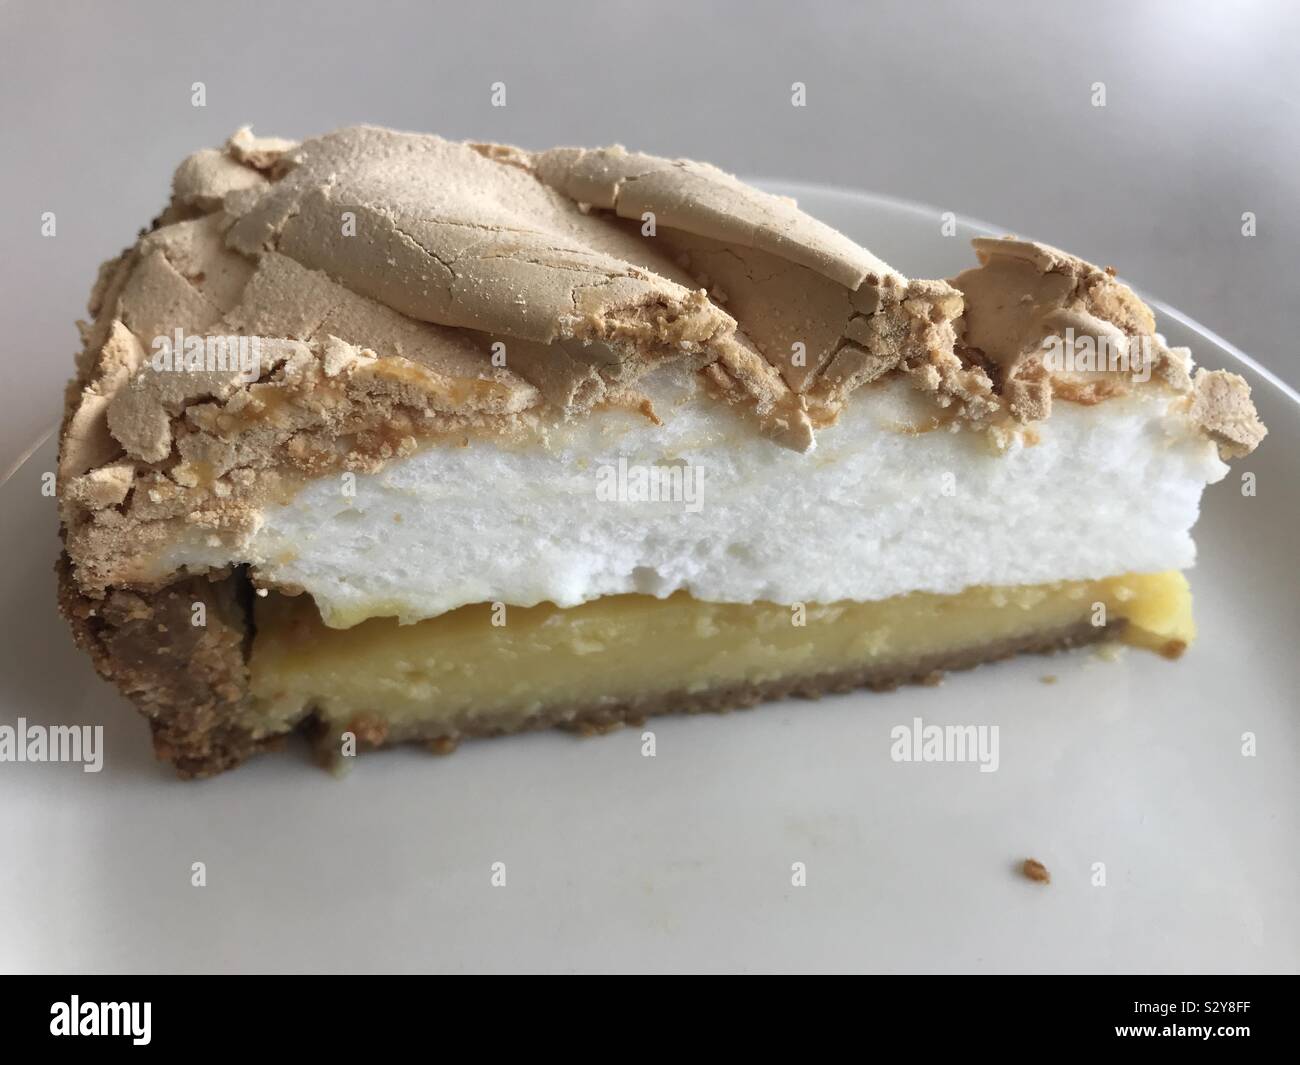 Slice of lemon meringue pie Stock Photo